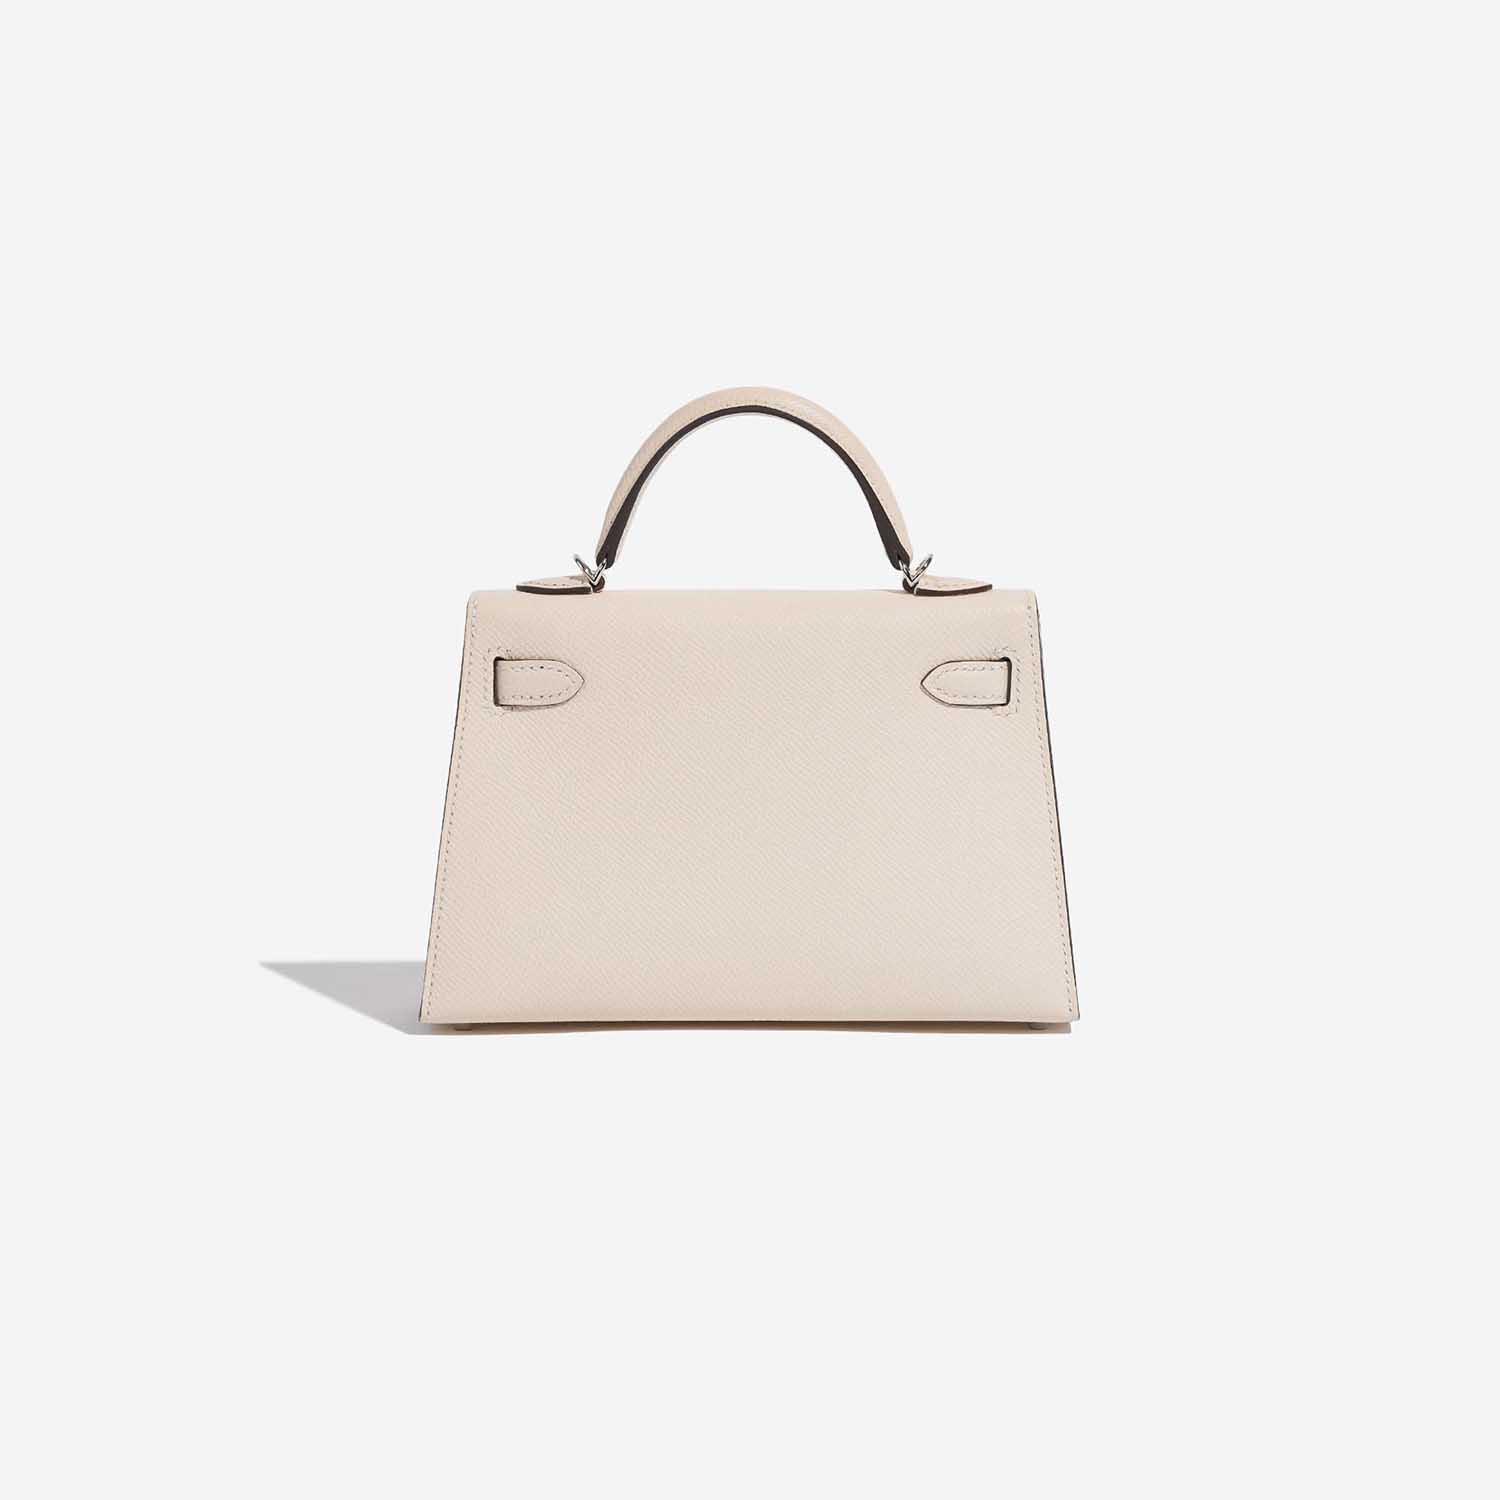 Hermès Kelly Mini Nata Back | Verkaufen Sie Ihre Designer-Tasche auf Saclab.com